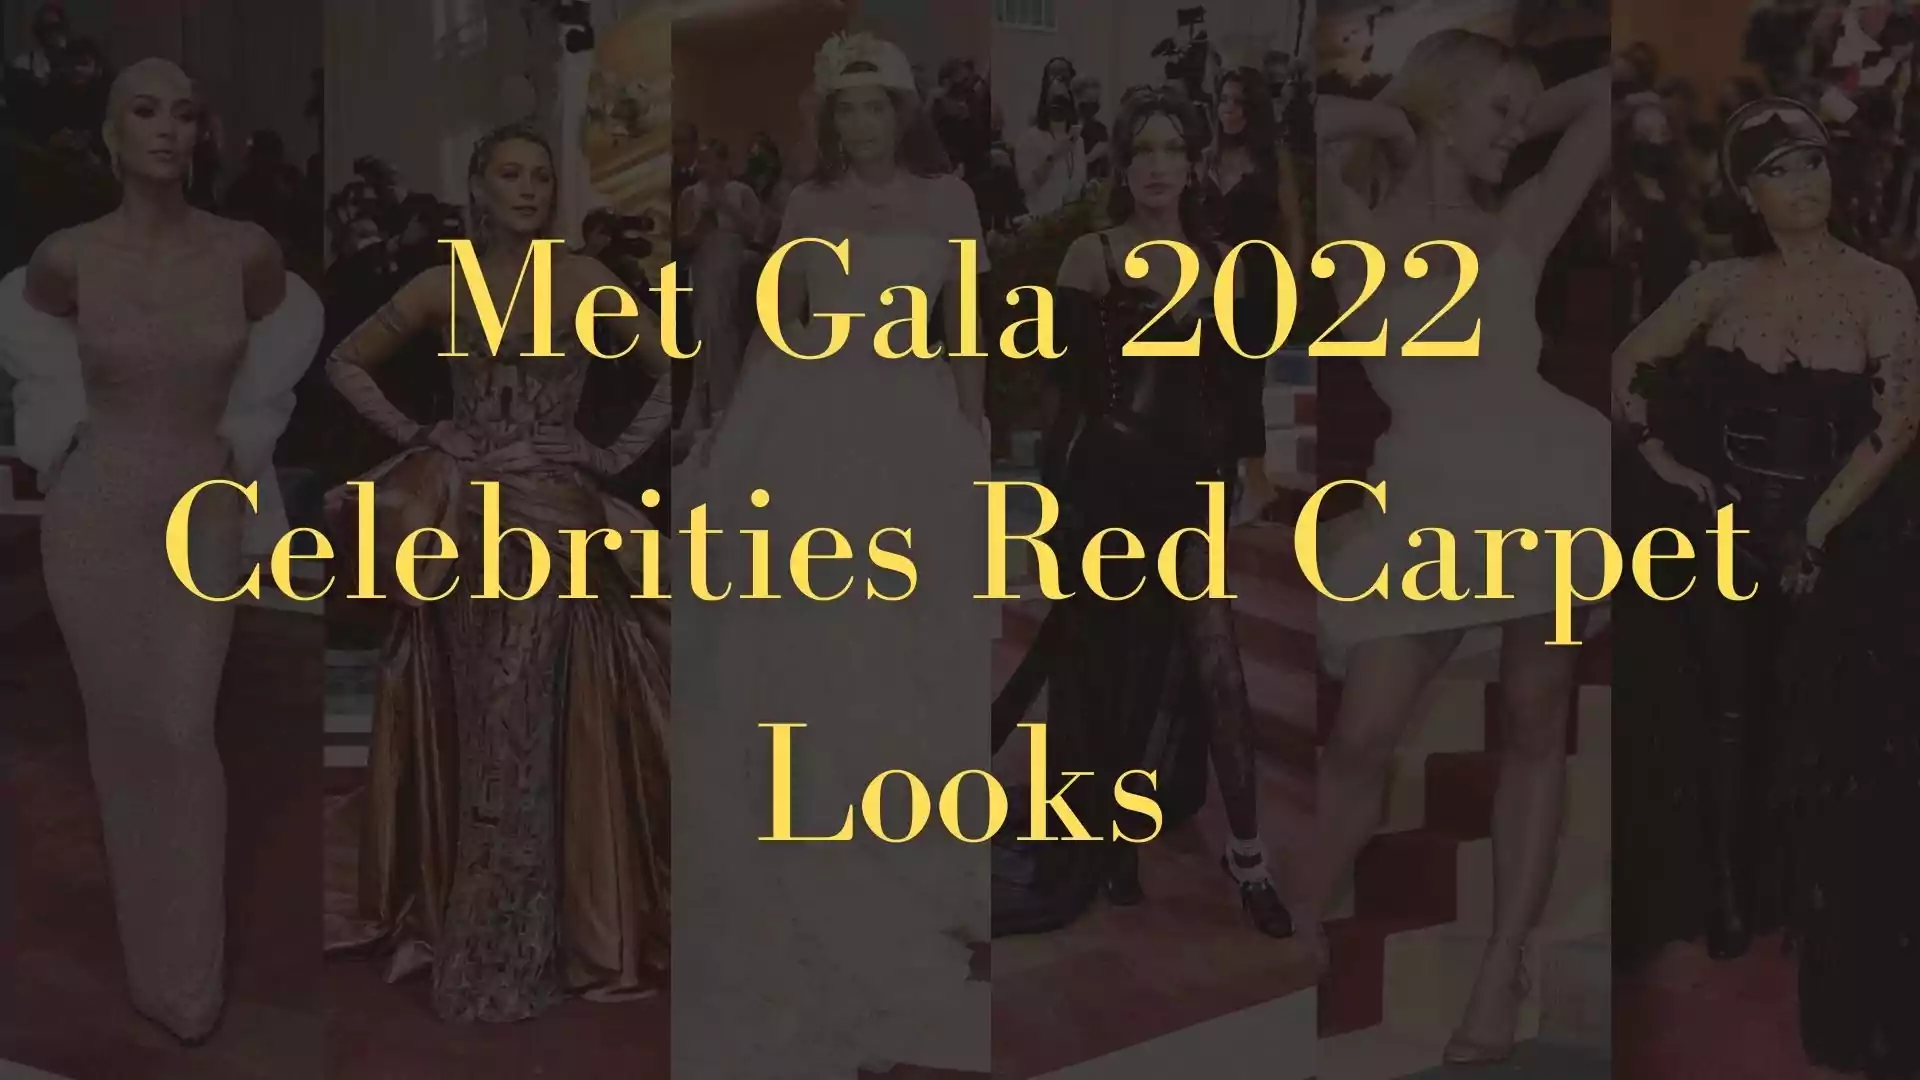 Met Gala 2022 Celebrities Red Carpet Looks